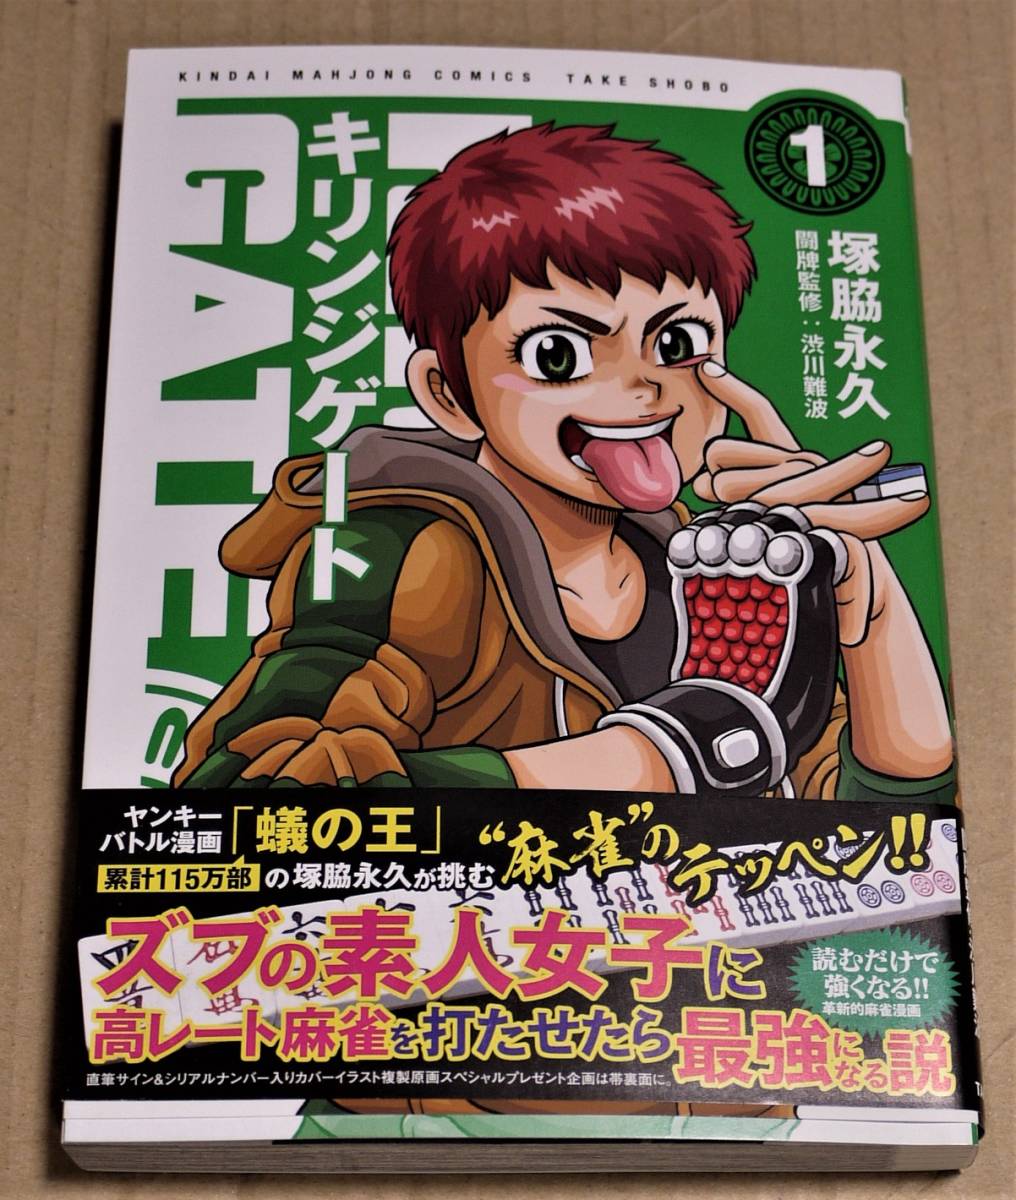 Kirinji Gate Volumen 1 con ilustraciones dibujadas a mano y autógrafos (Eitsu Tsukawaki) Envío Clickpost incluido Primera edición 2019 Uhyosuke, historietas, productos de anime, firmar, pintura dibujada a mano